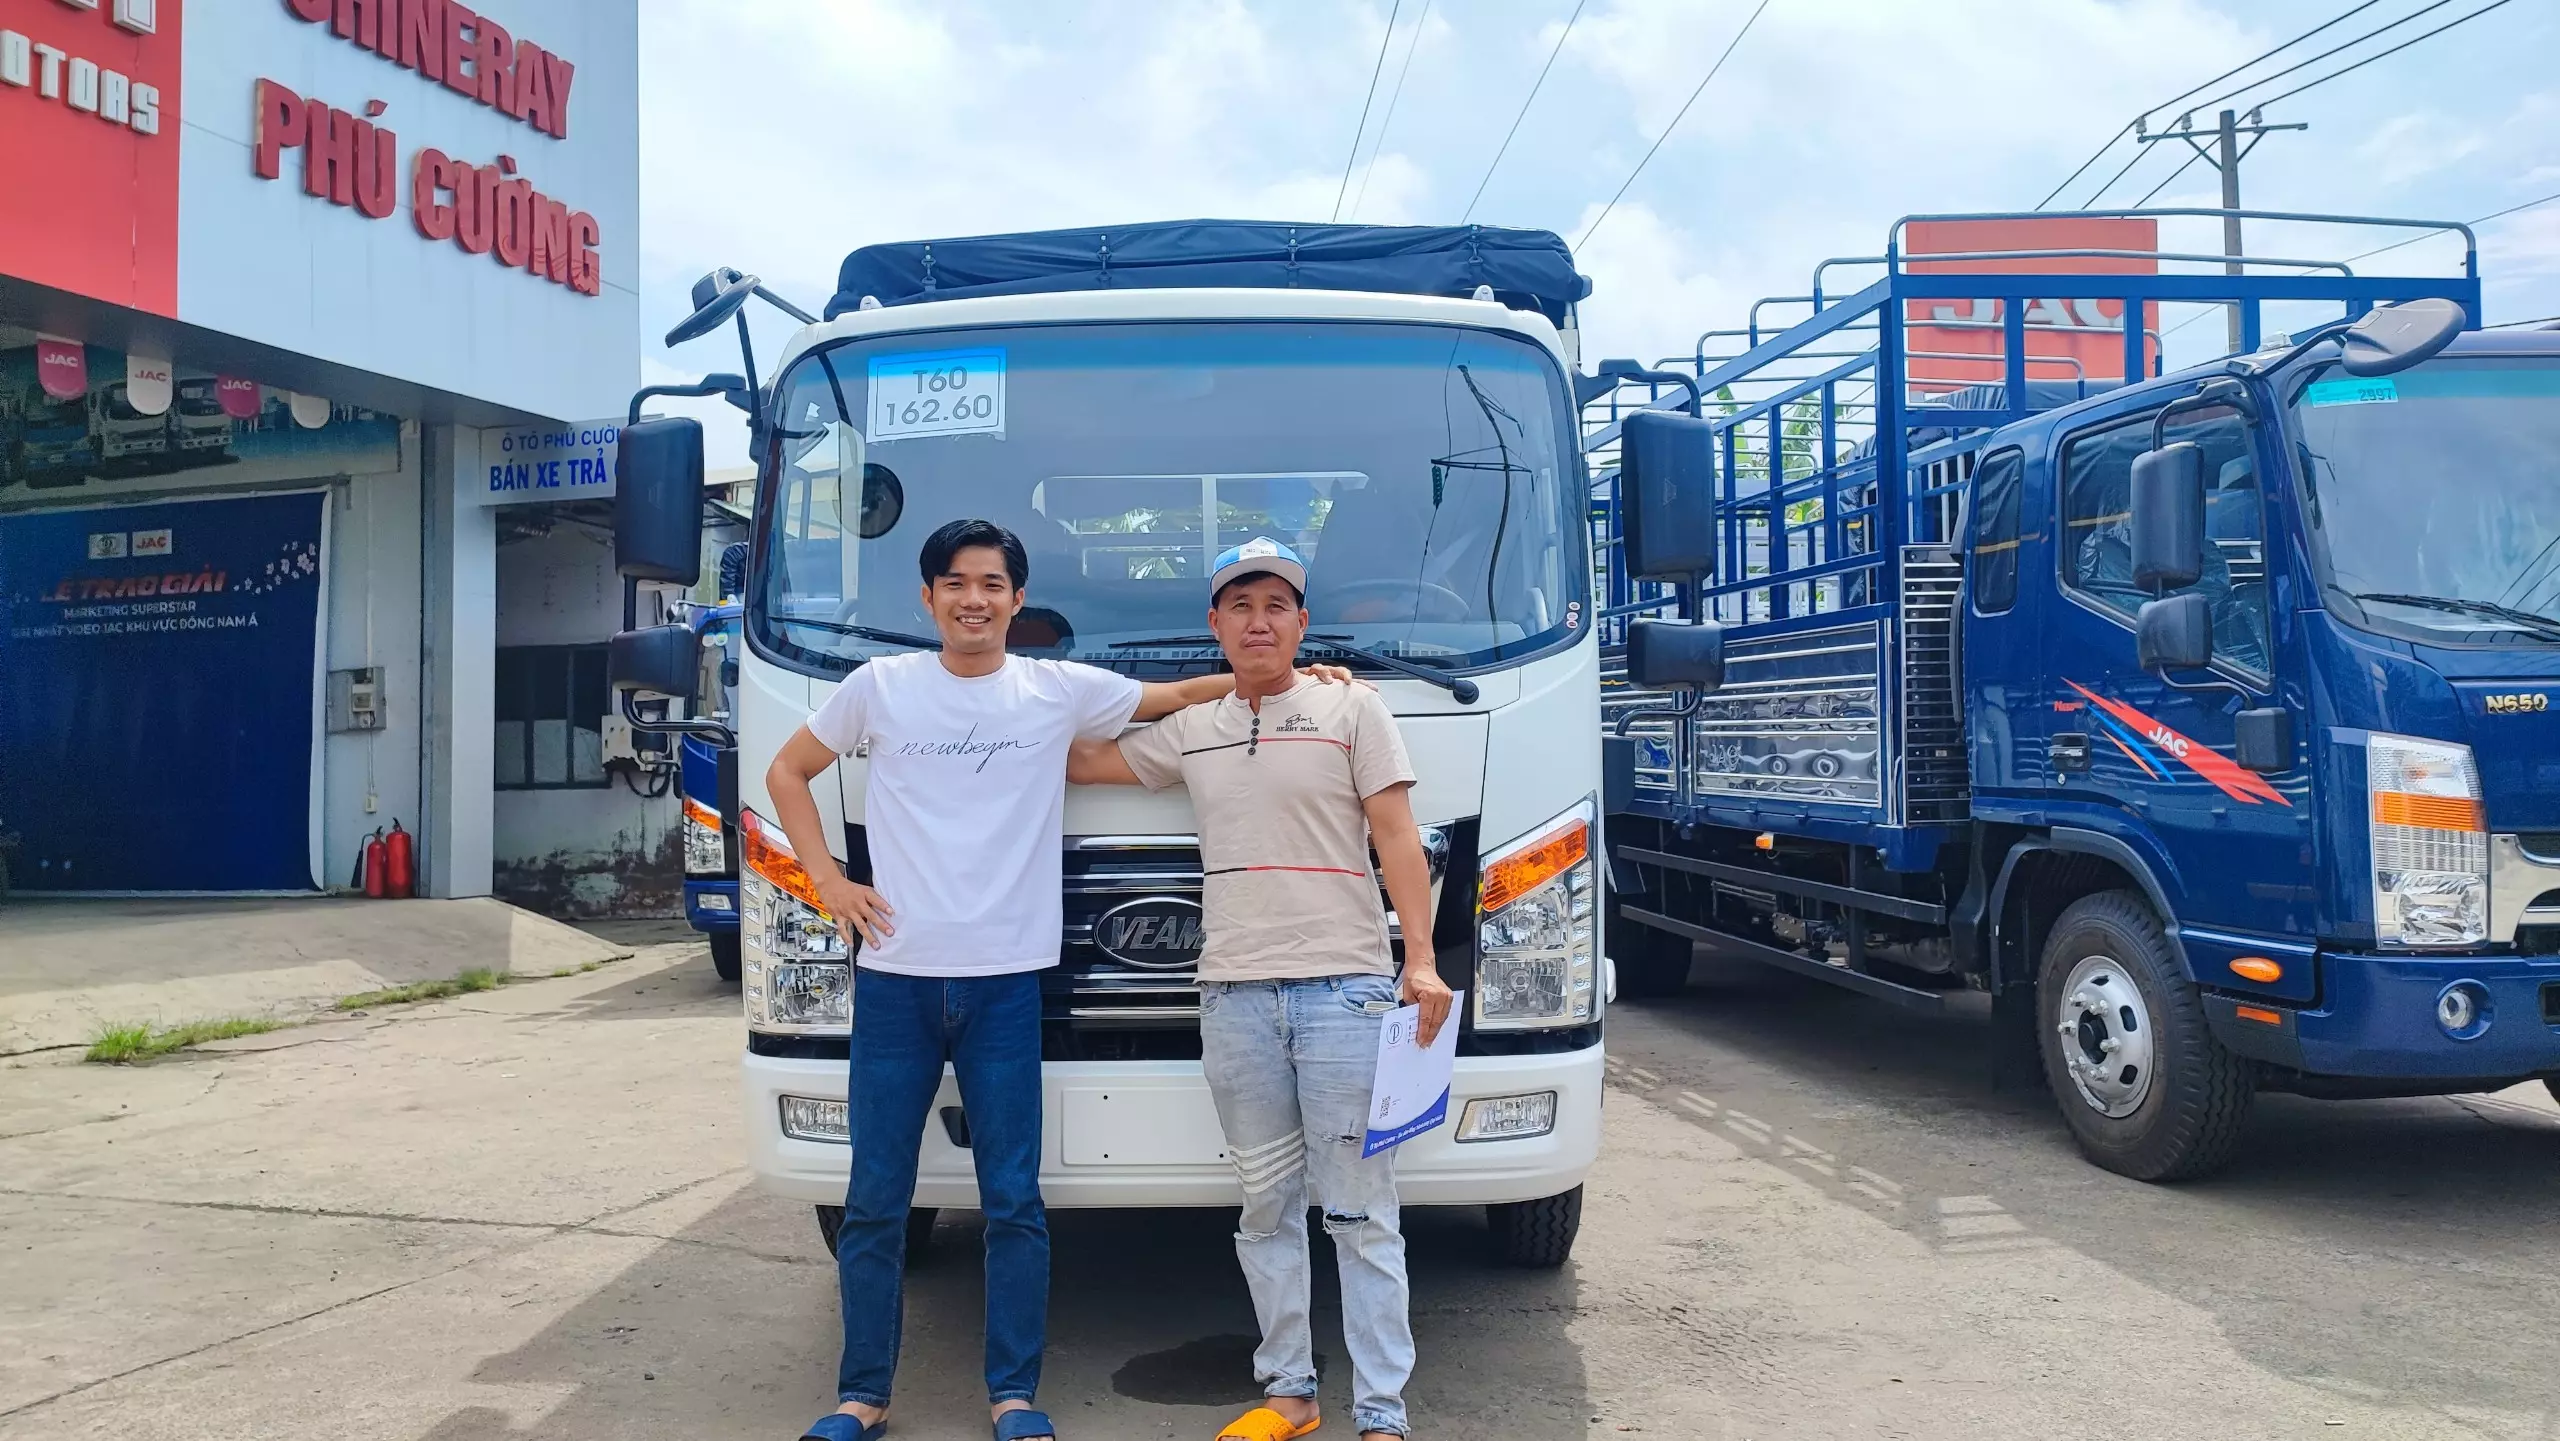 Gia đình anh Ngọc ở Hà Tây “An tâm làm ăn với xe tải Veam ở Phú Cường”